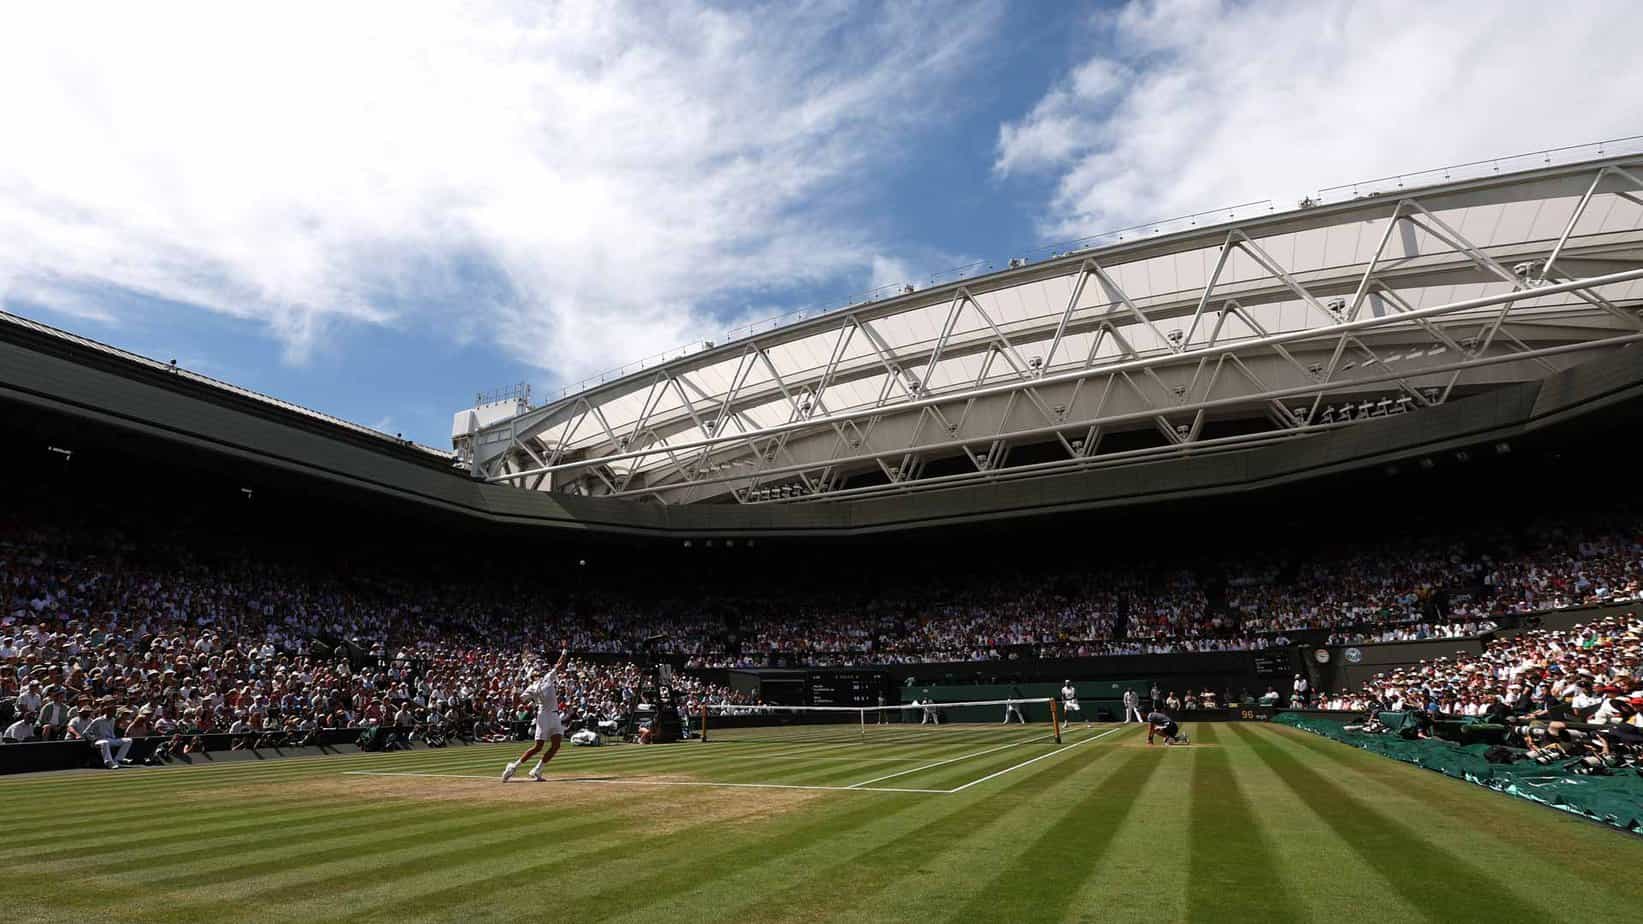 Vista previa y probabilidades de apuestas de Wimbledon 2023